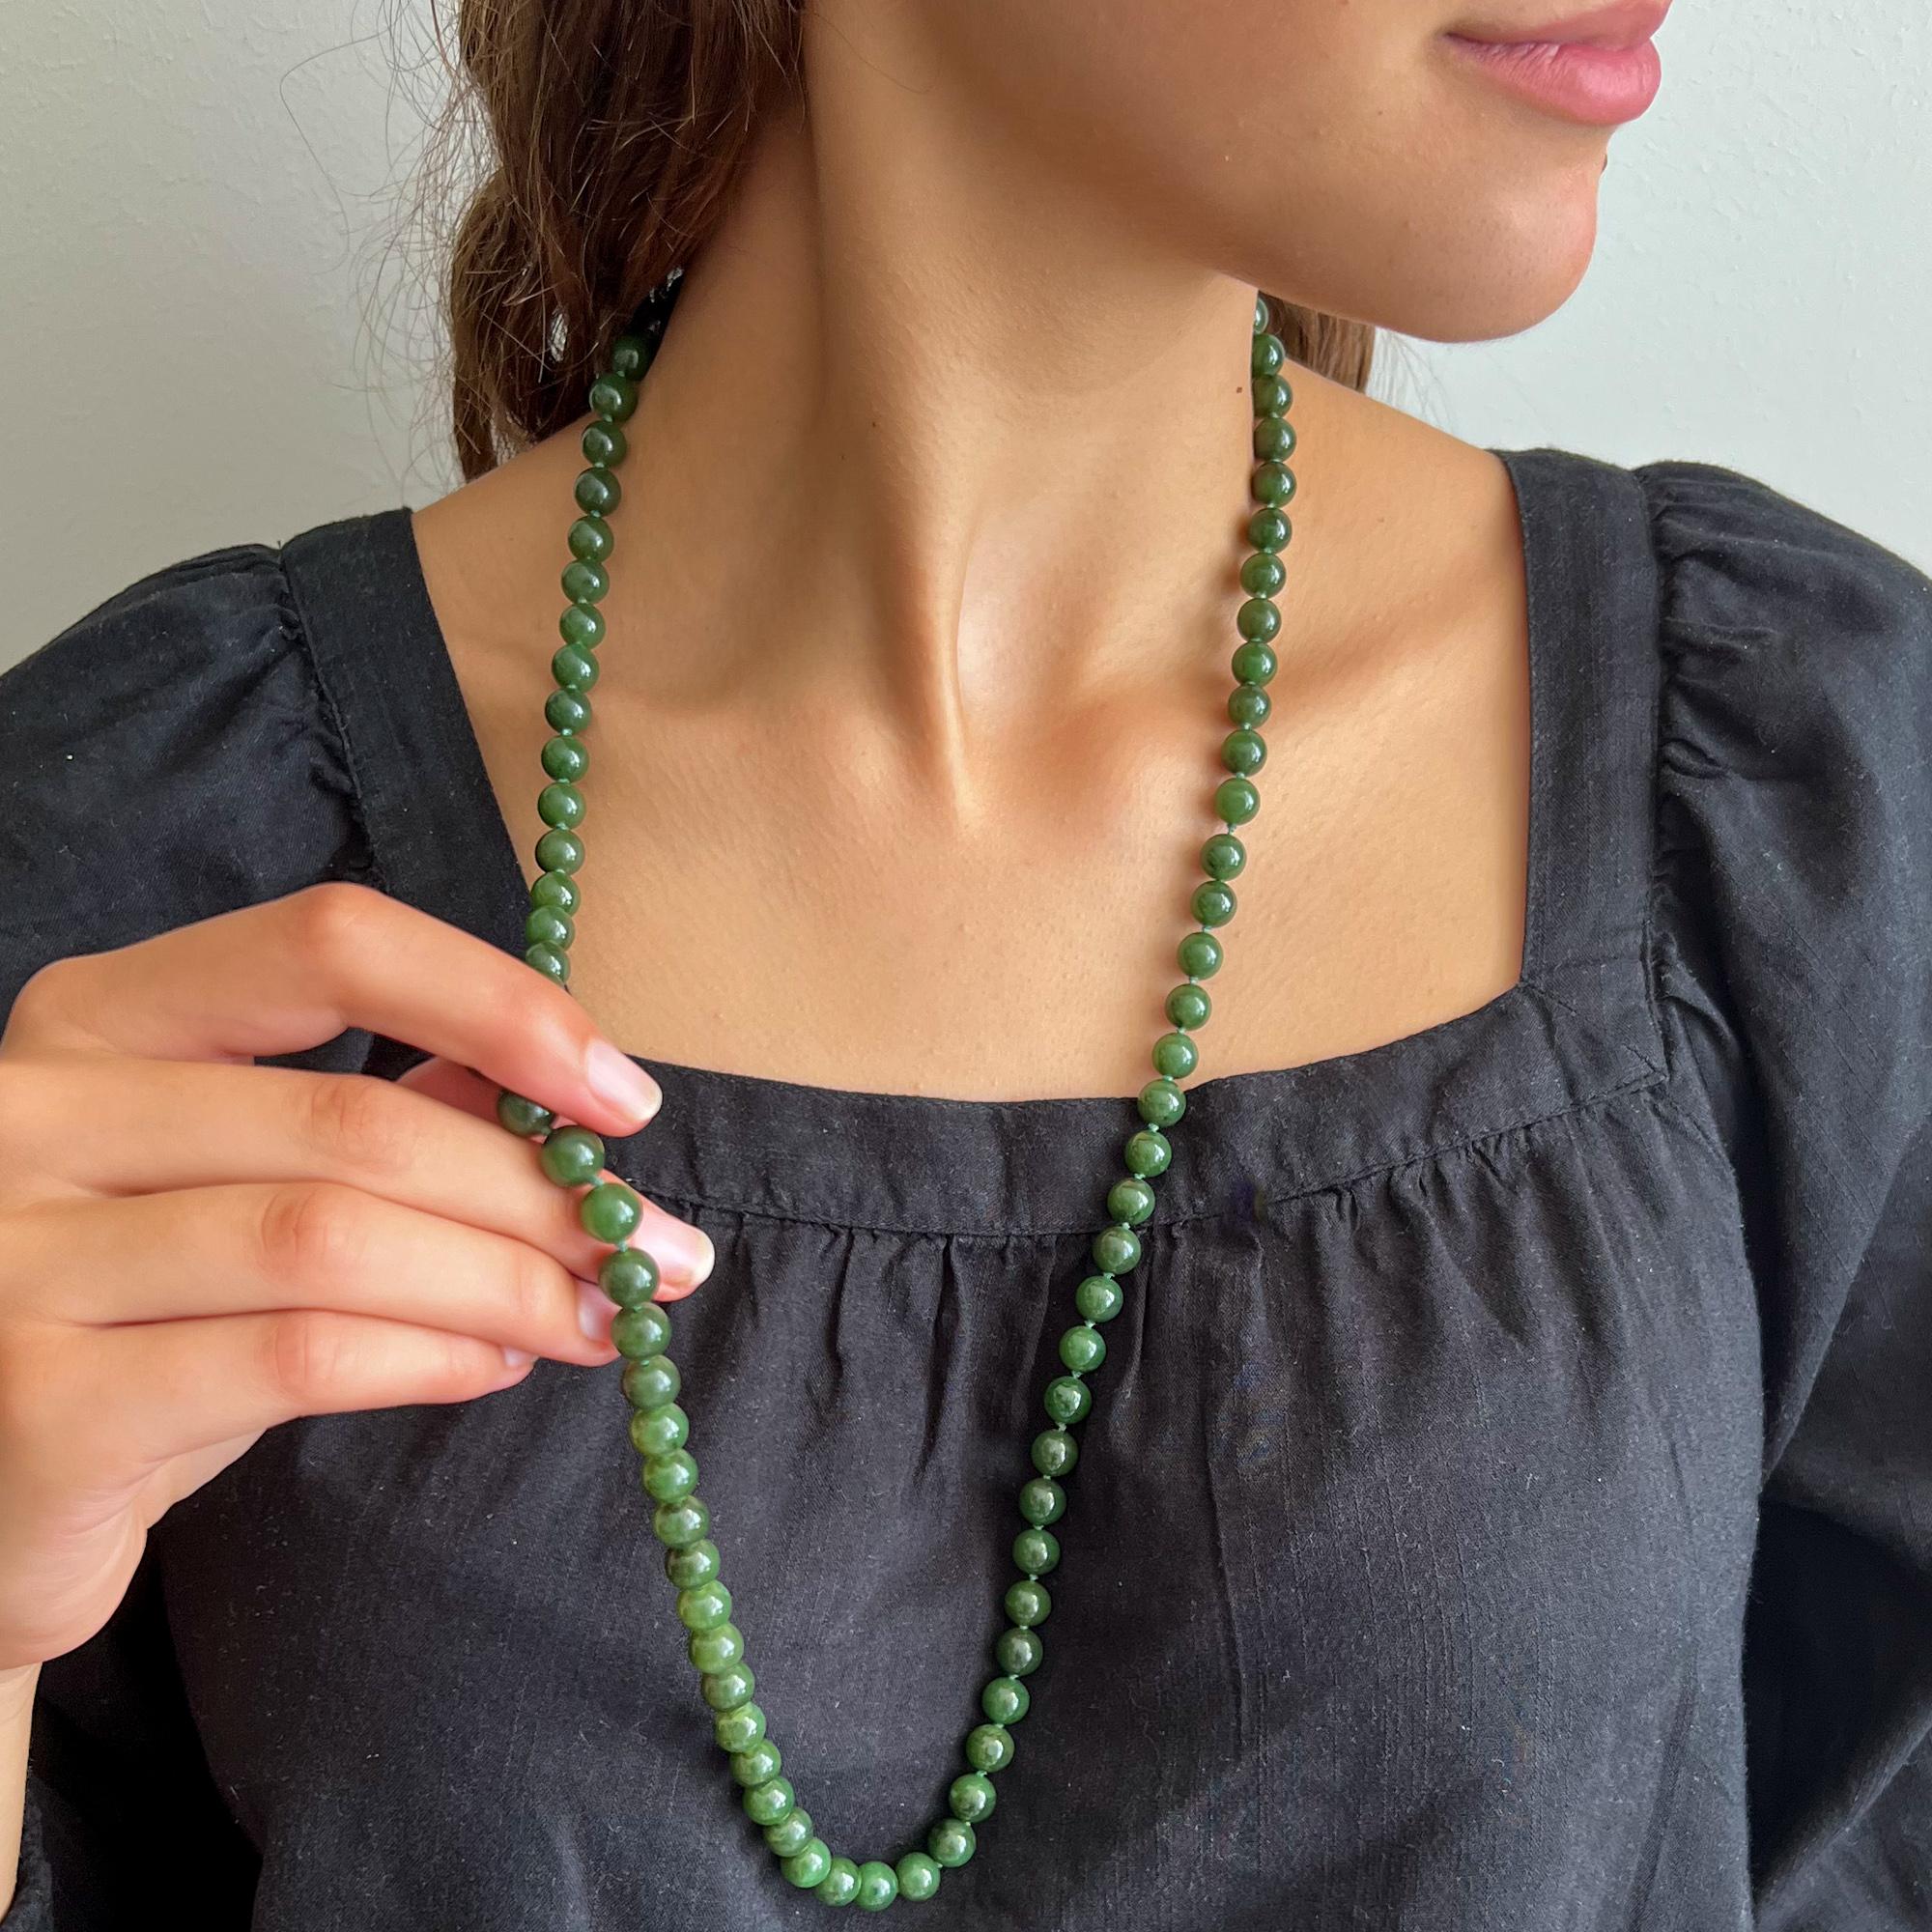 Eine schöne einreihige Perlenkette aus grüner Nephrit-Jade. Die Halskette ist lang und besteht aus runden Nephrit-Jadesteinen. Die Jadeperlen haben eine schöne grüne Farbe und sind gleich groß. Damit zwischen den Perlen etwas Platz bleibt, wird der